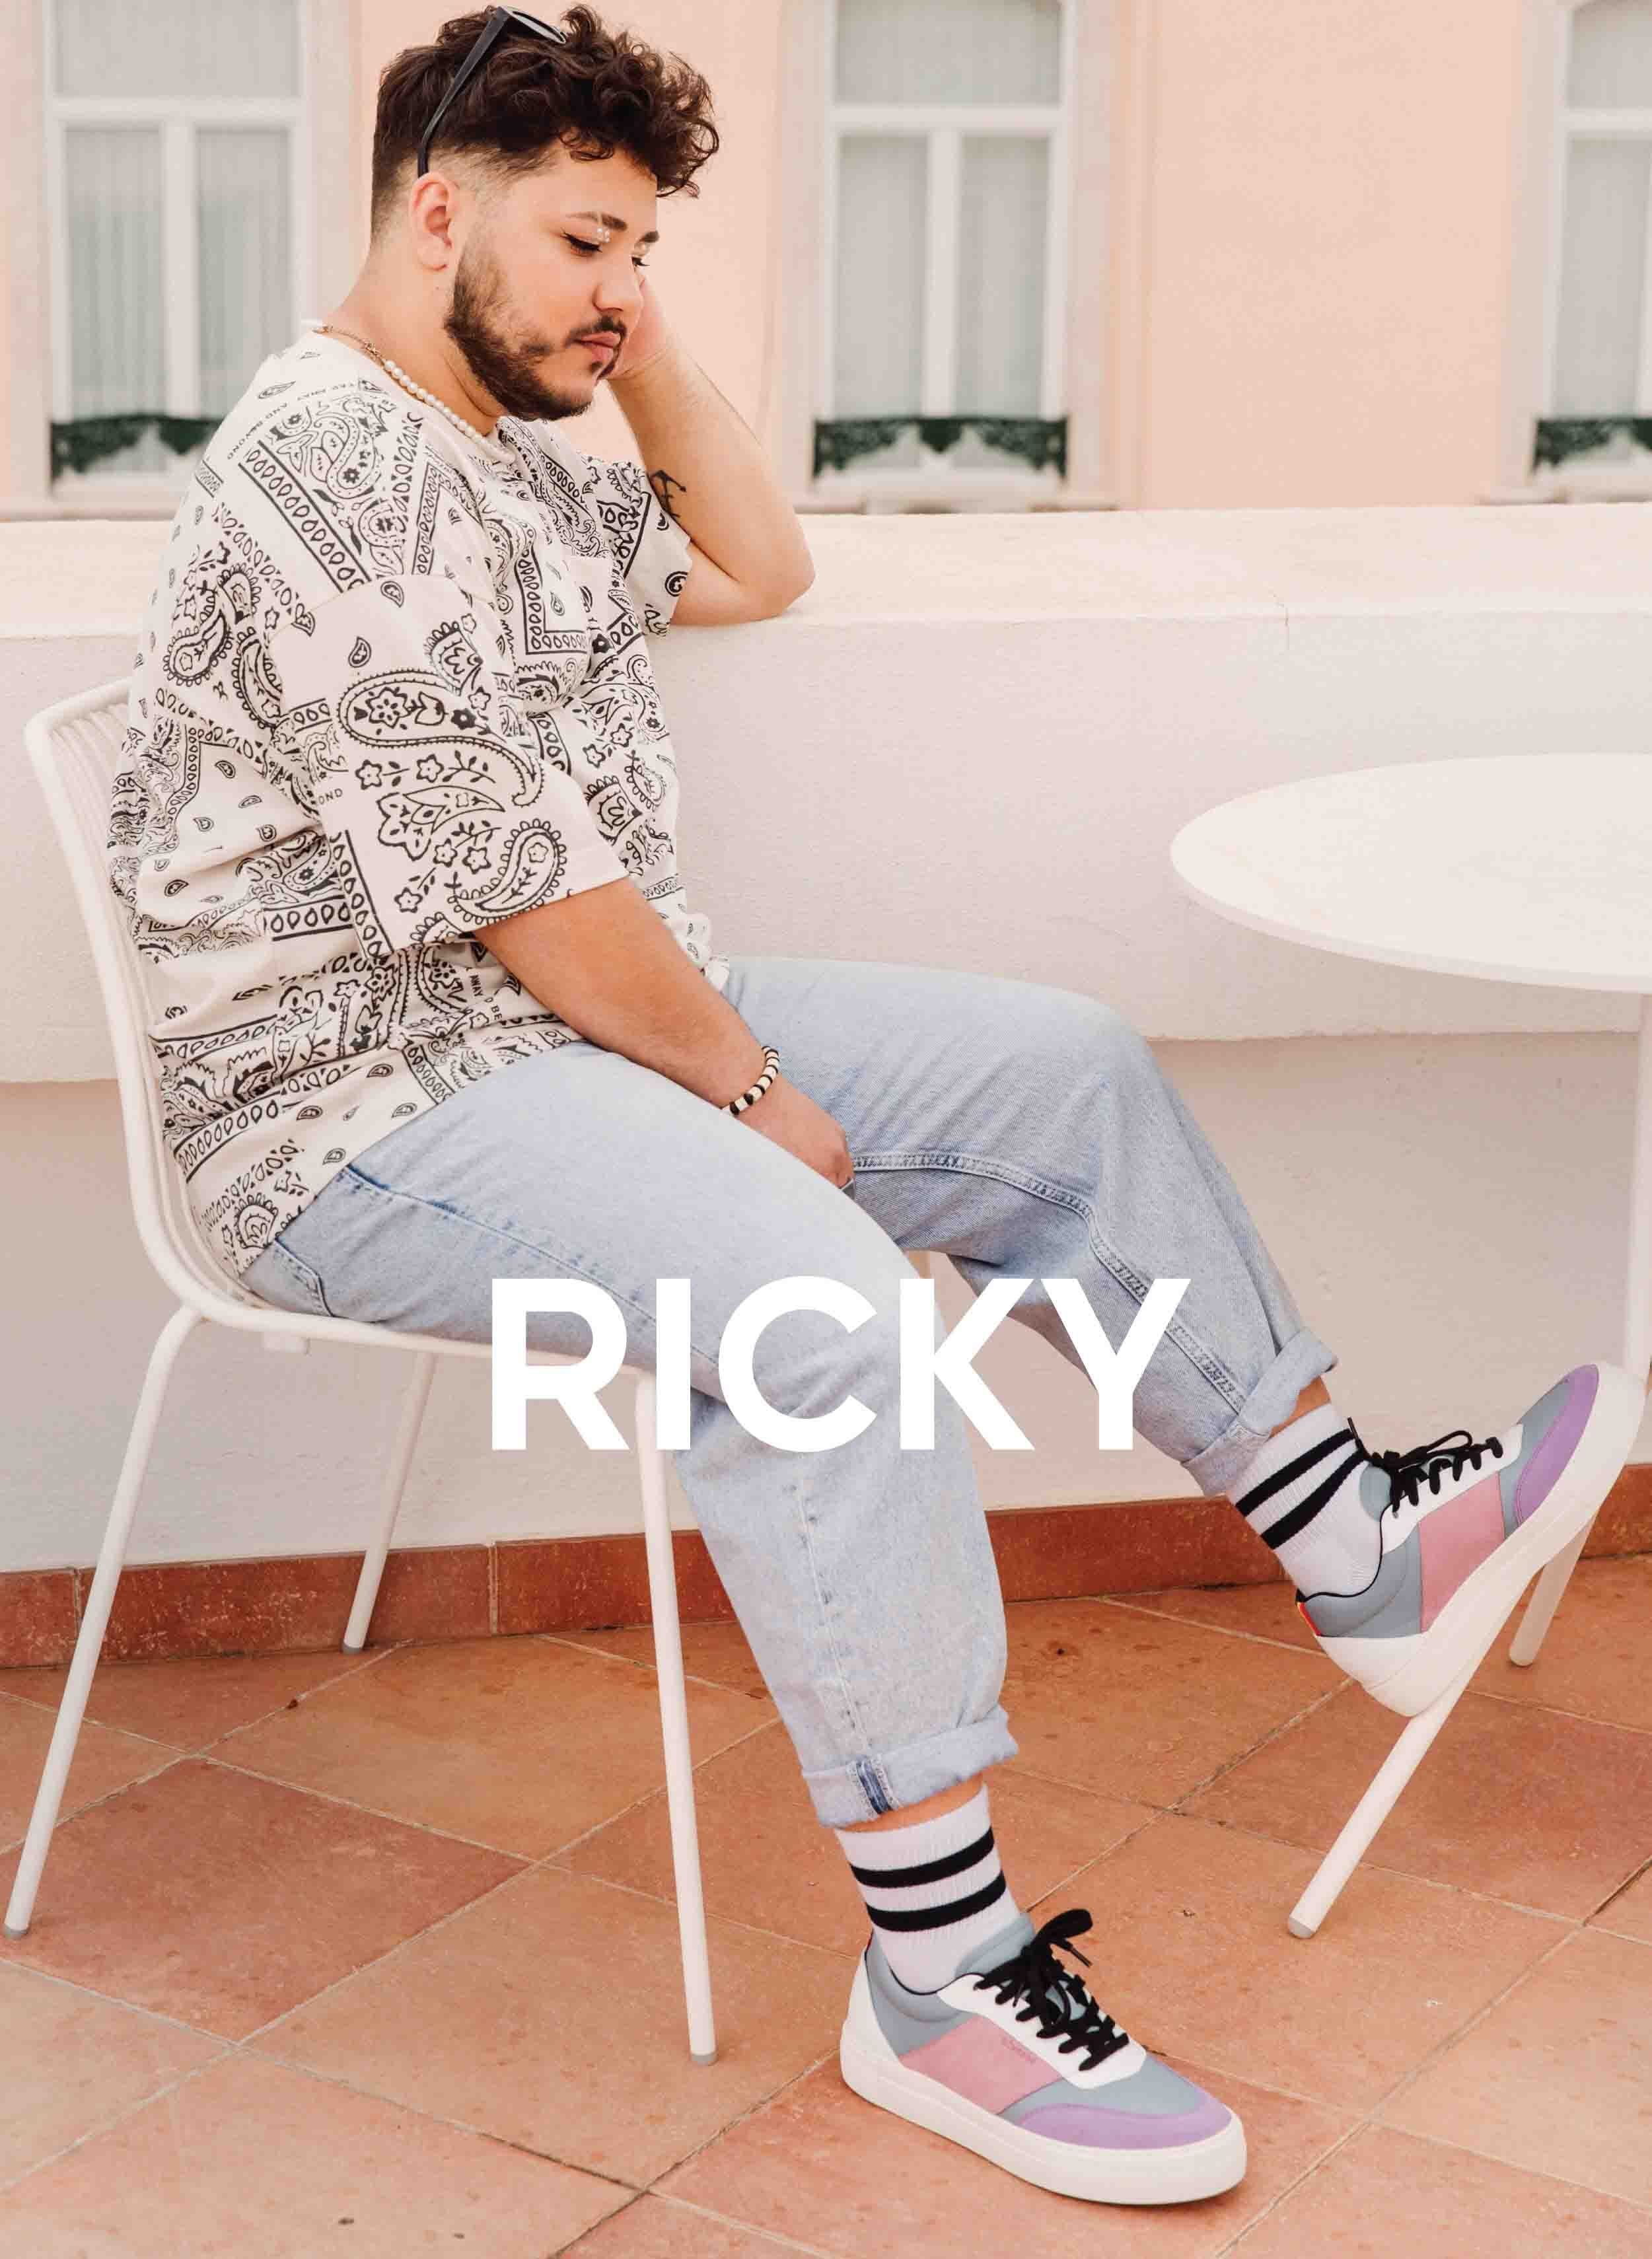 Ricky sentado en una silla mirando su costumbre Diverge sneakers, promoviendo el impacto social y el calzado personalizado a través del proyecto Imagine.   